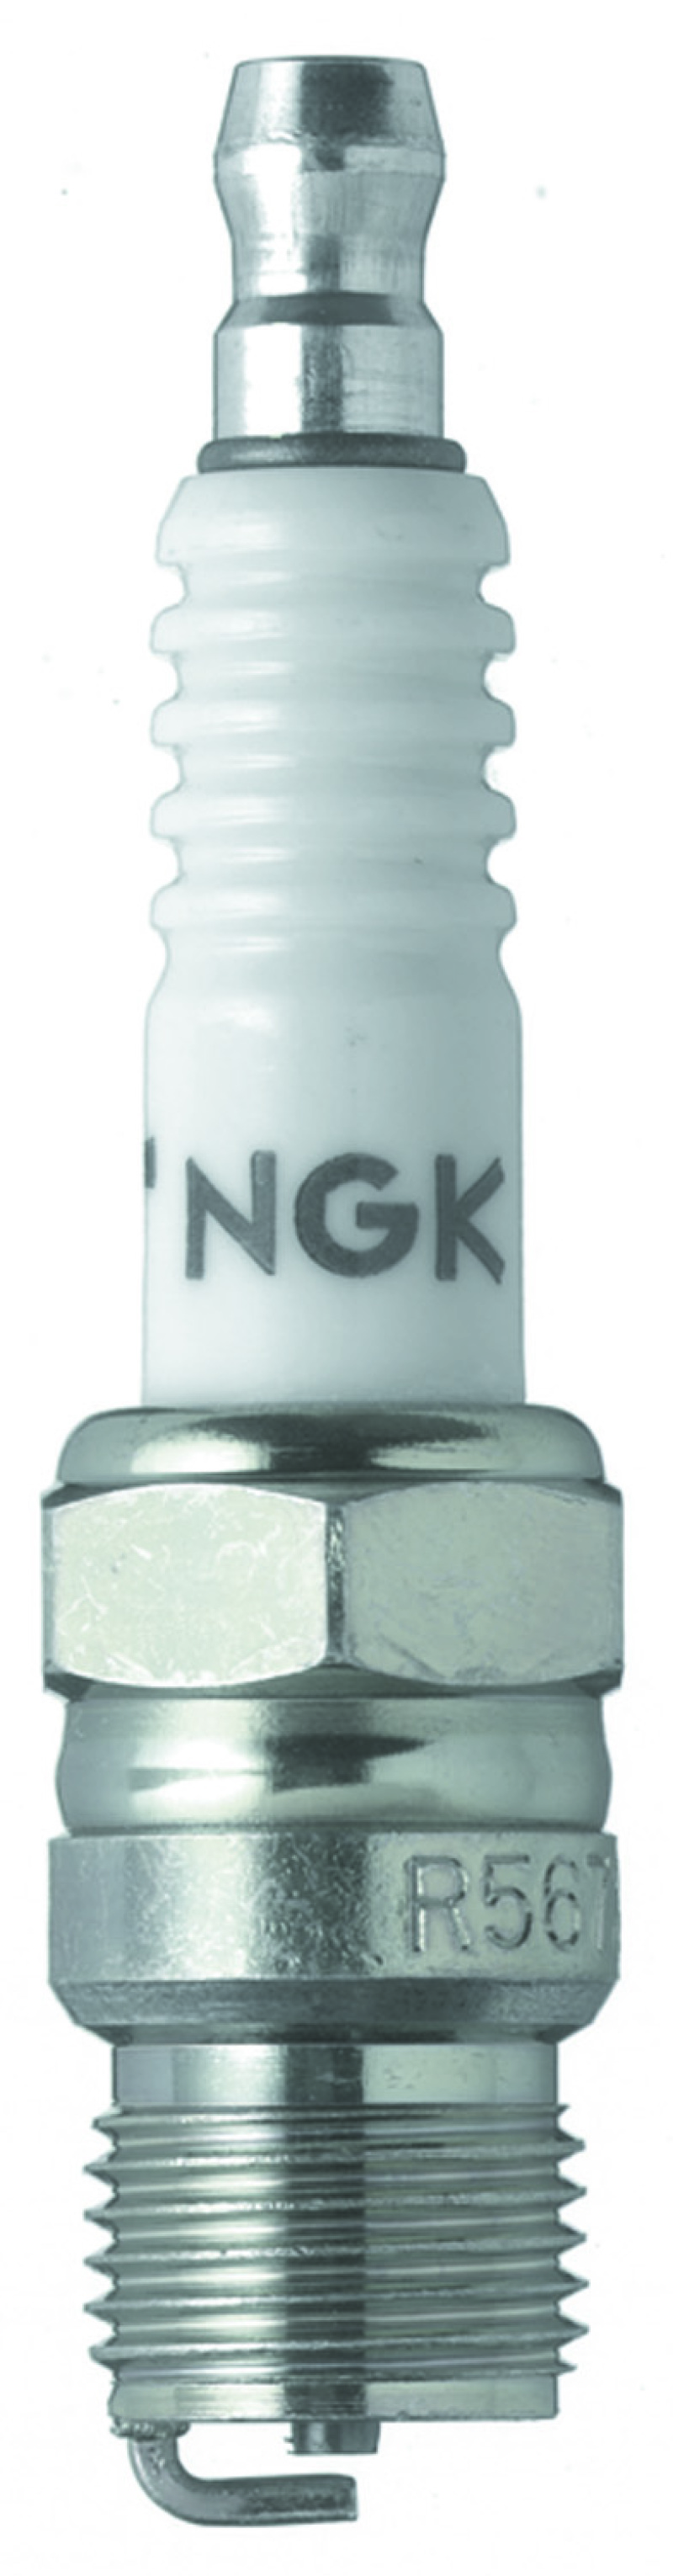 NGK Racing Spark Plug Box of 4 (R5673-9) - 3442